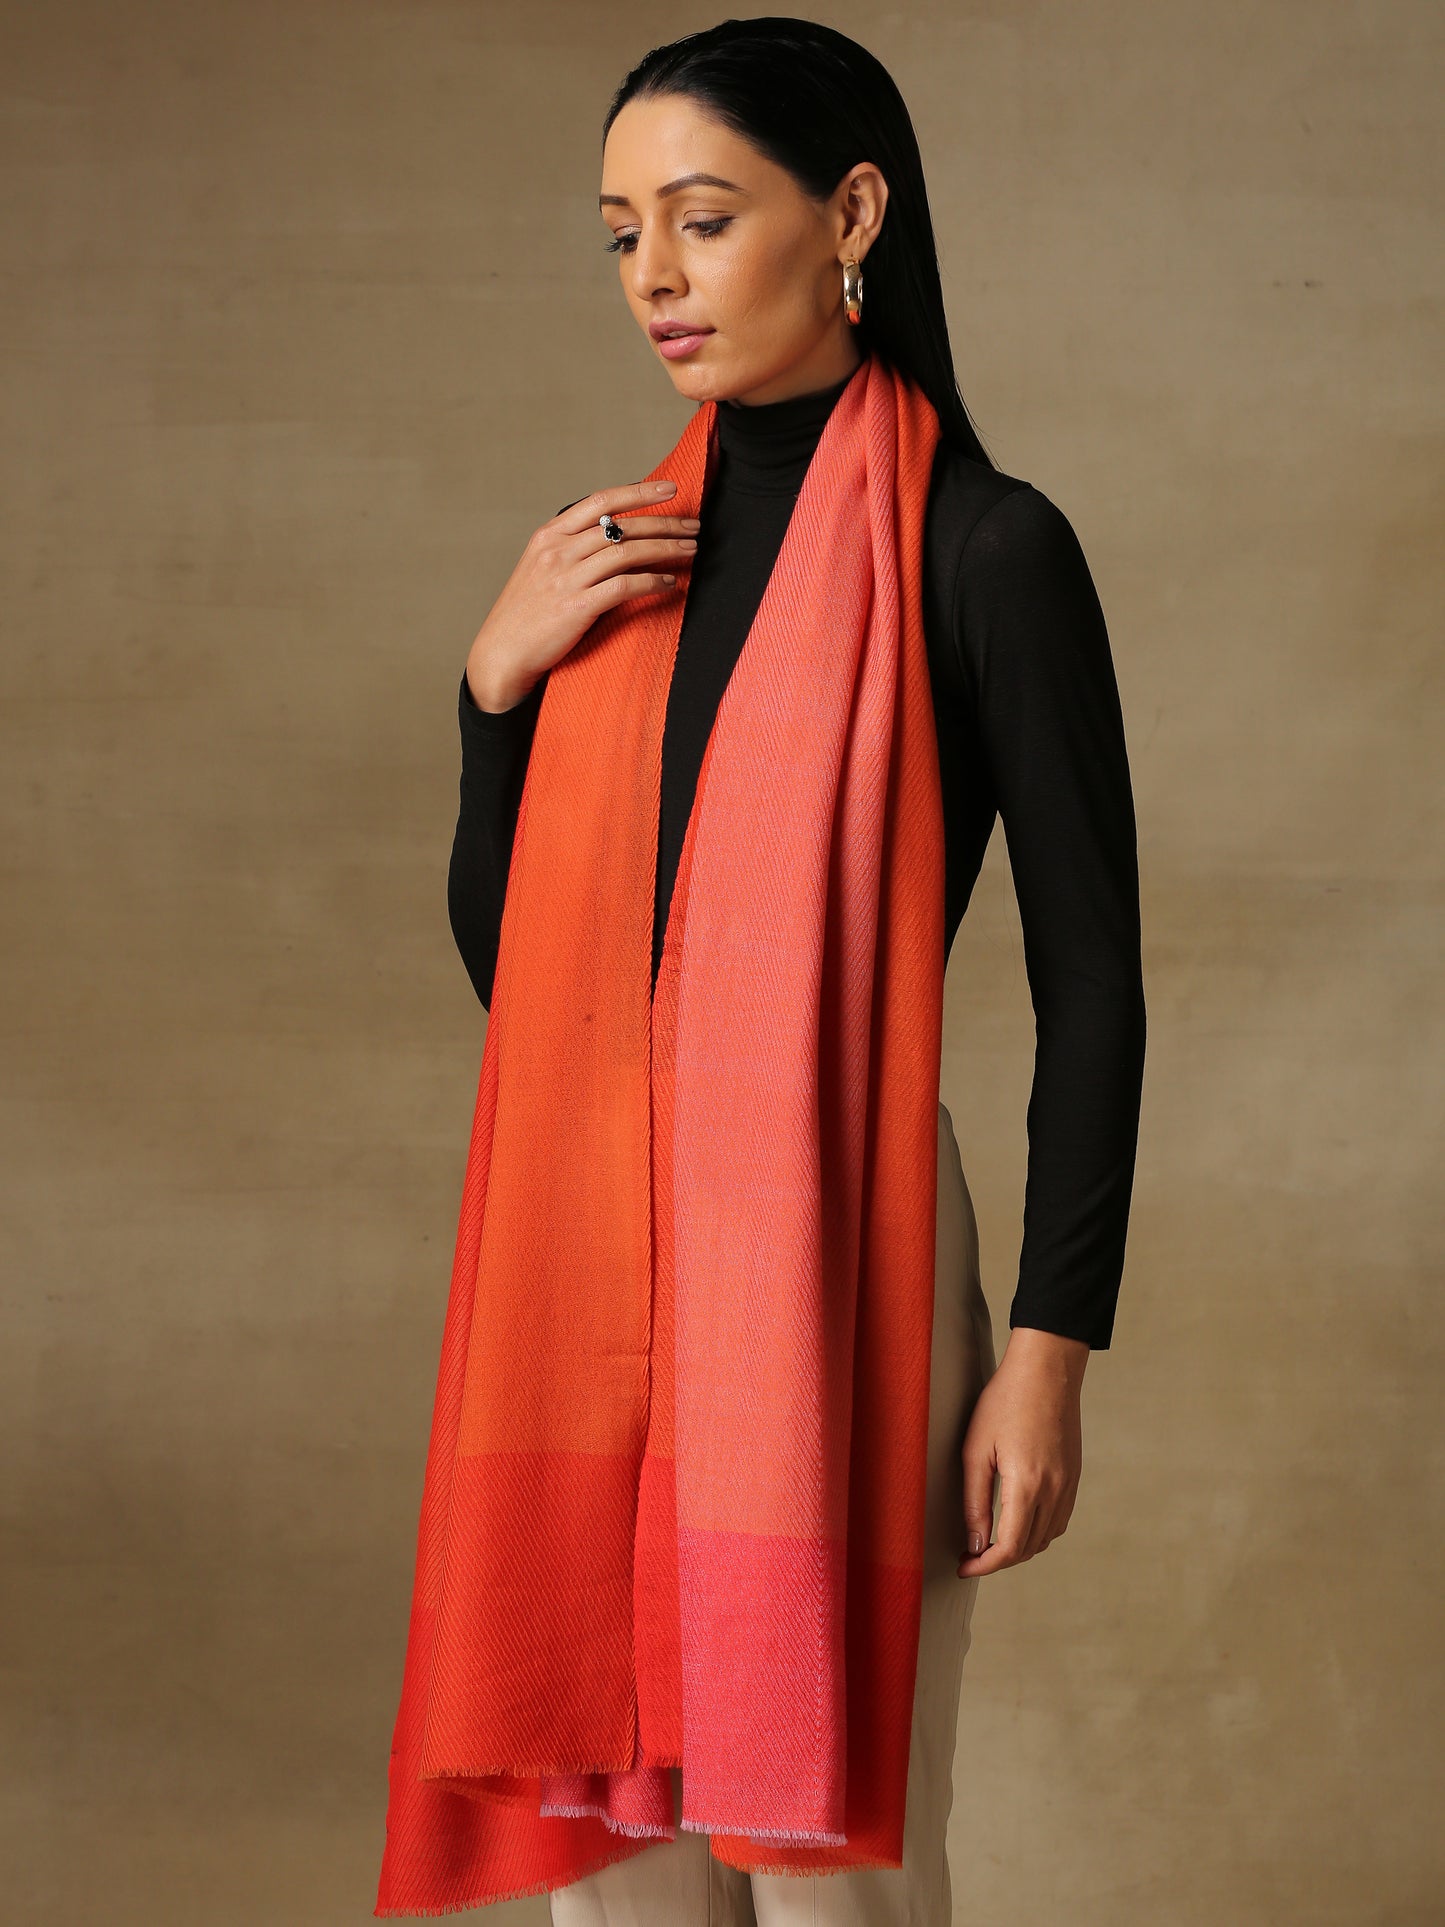 Model is wearing a Pardah stole by Shaza in vermillion orange.